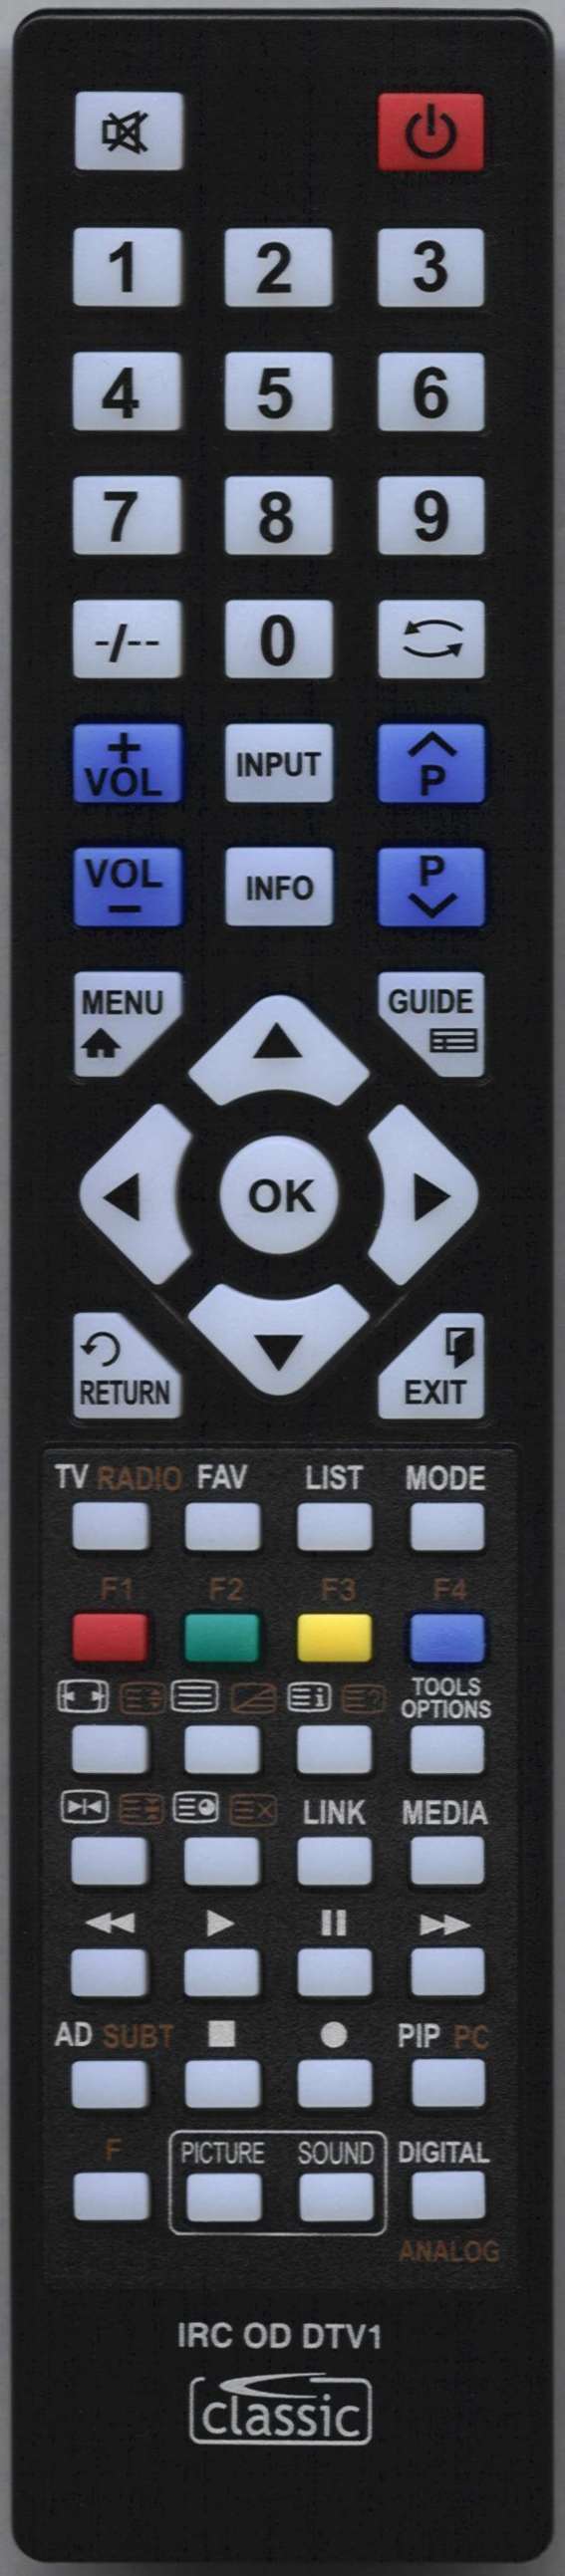 ORION TV19LF25 Remote Control